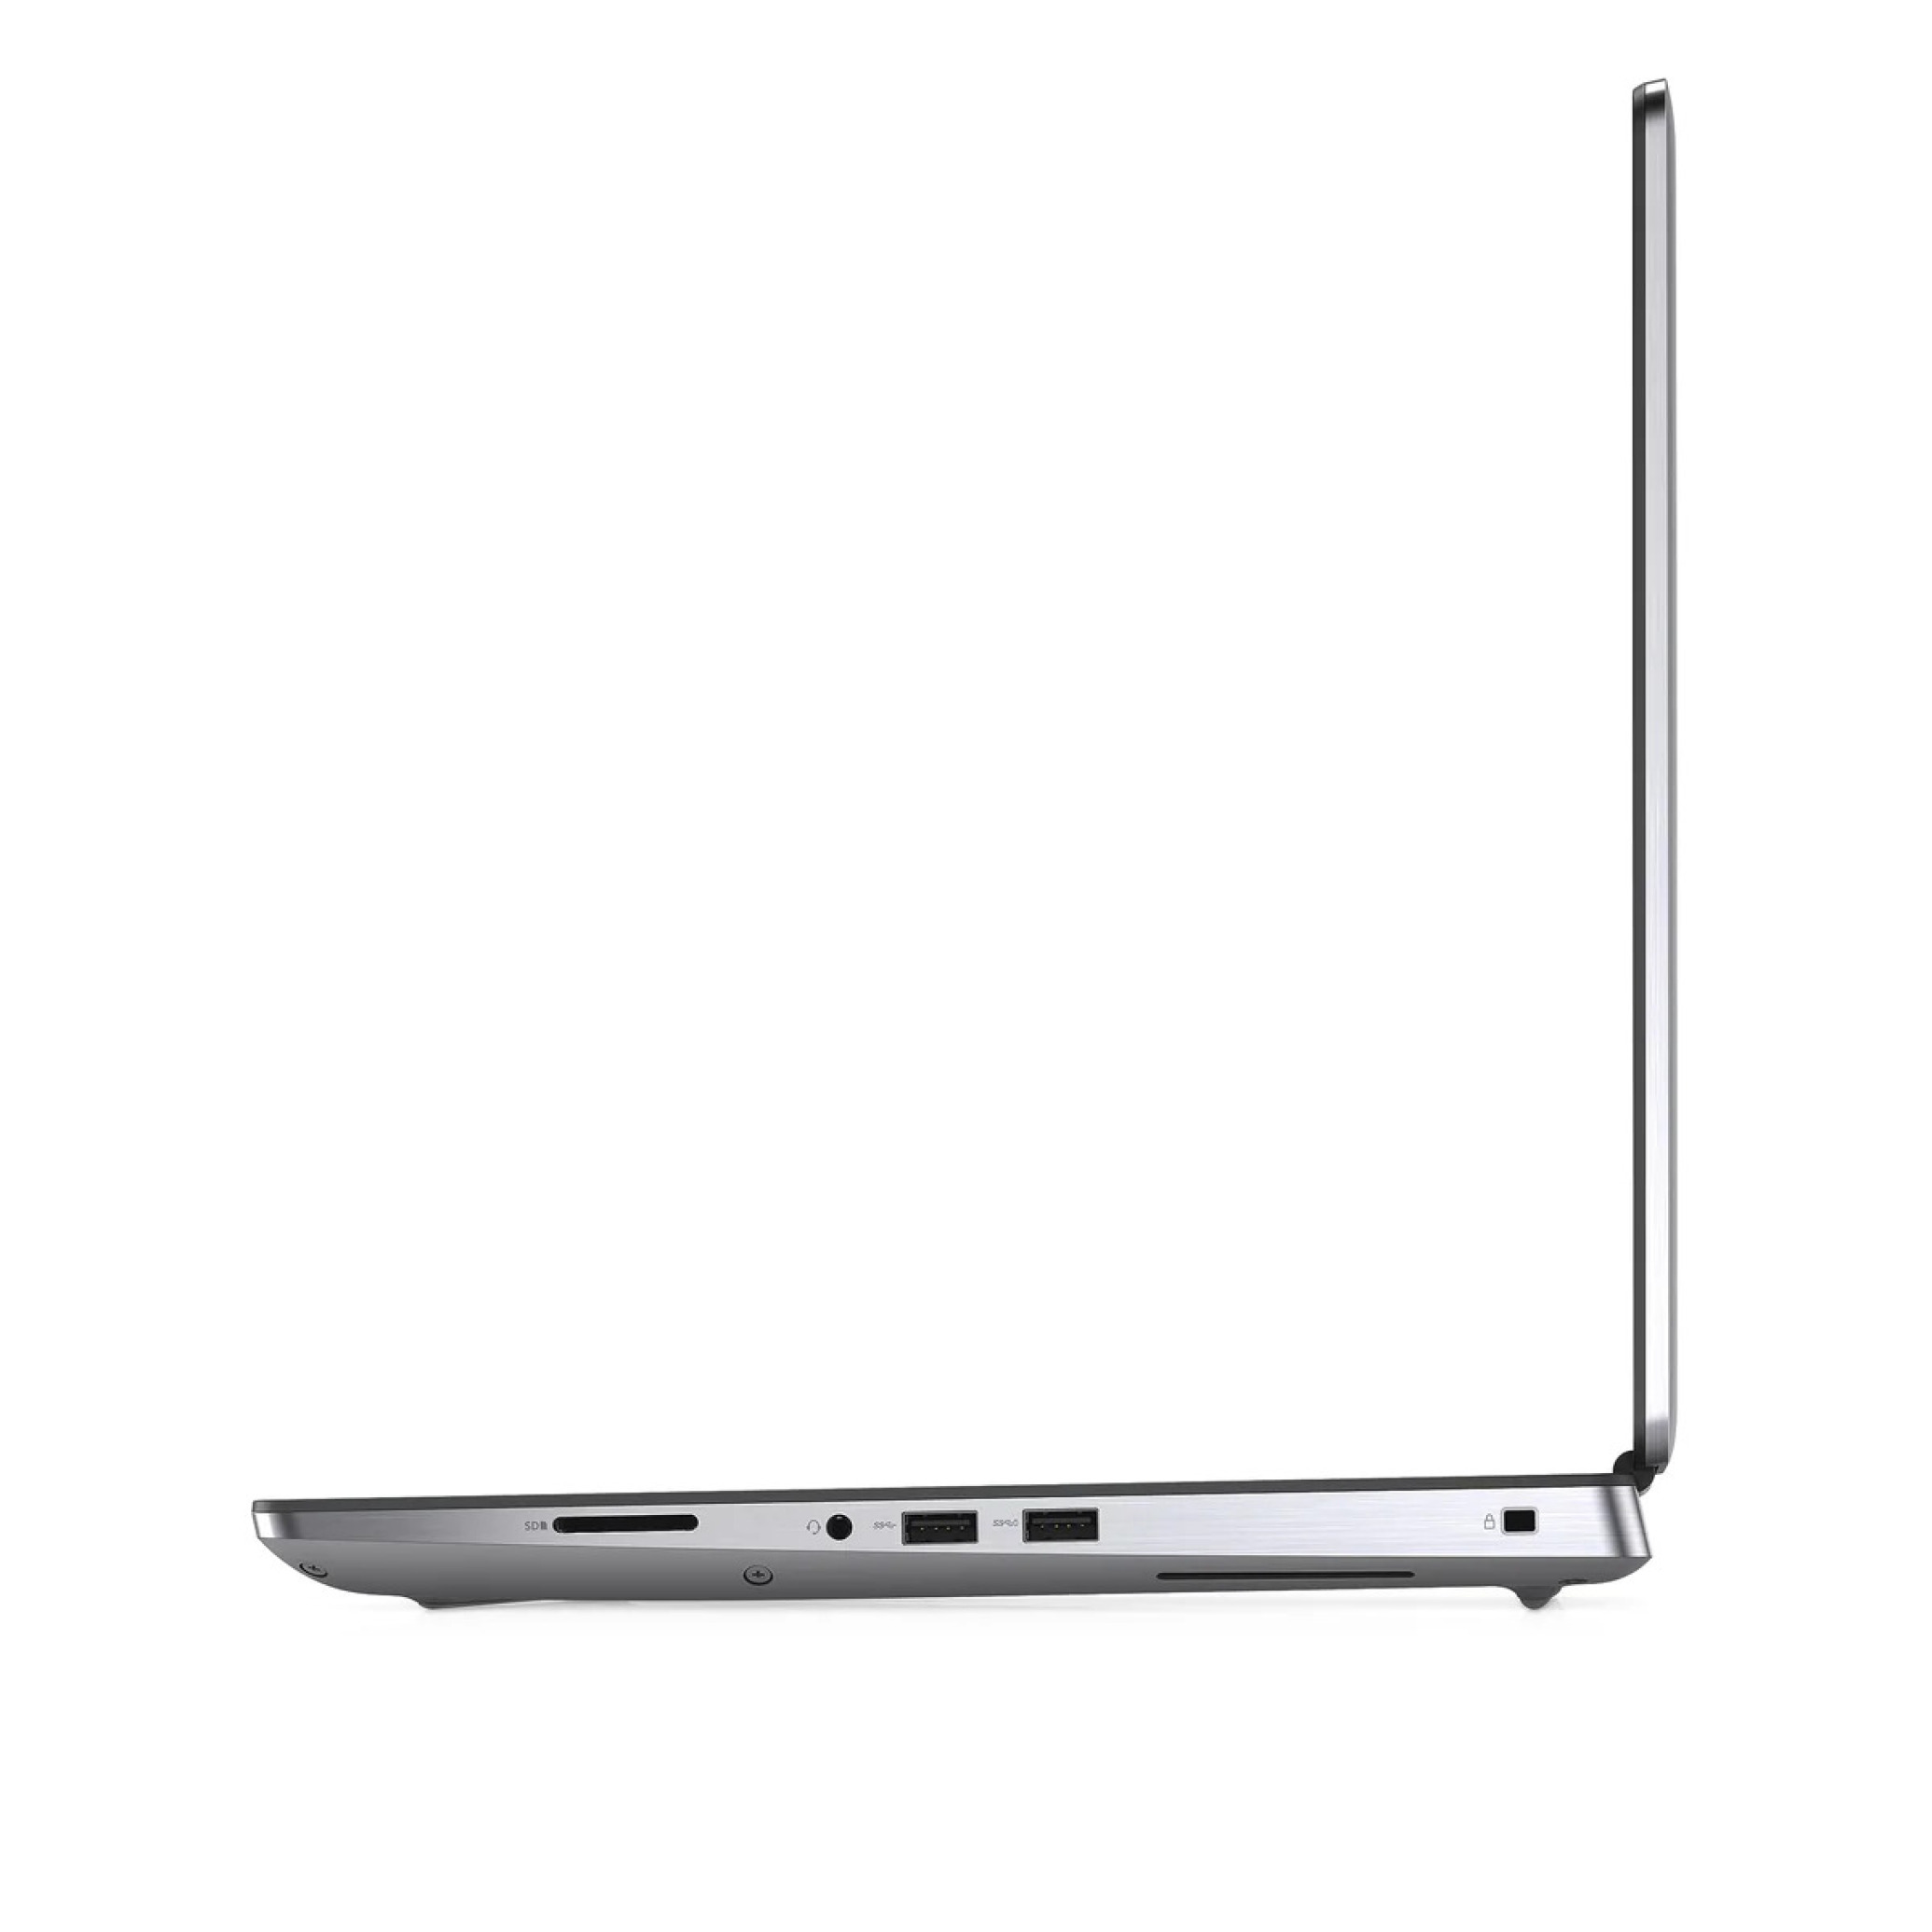  لپ تاپ دل پرسیژن 7550 پردازنده زئون Xeon W-10855M گرافیک 4 گیگابایت | لاکچری لپ تاپ 